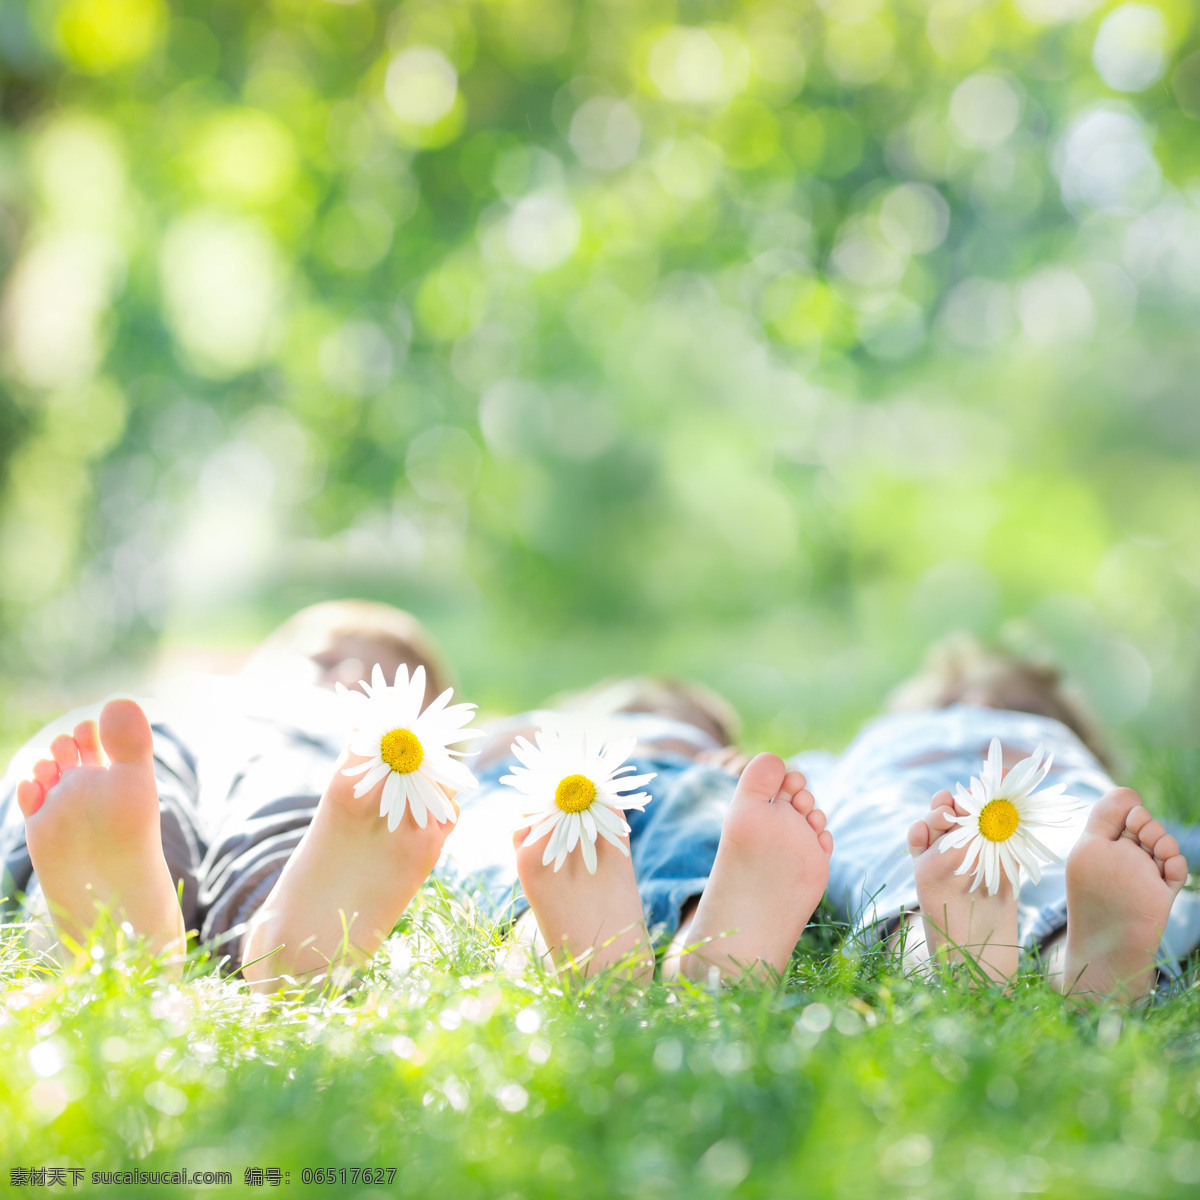 躺 草地 上 一家人 幸福开心 爸爸 妈妈 男孩 女孩 大人小孩 生活人物 人物图片